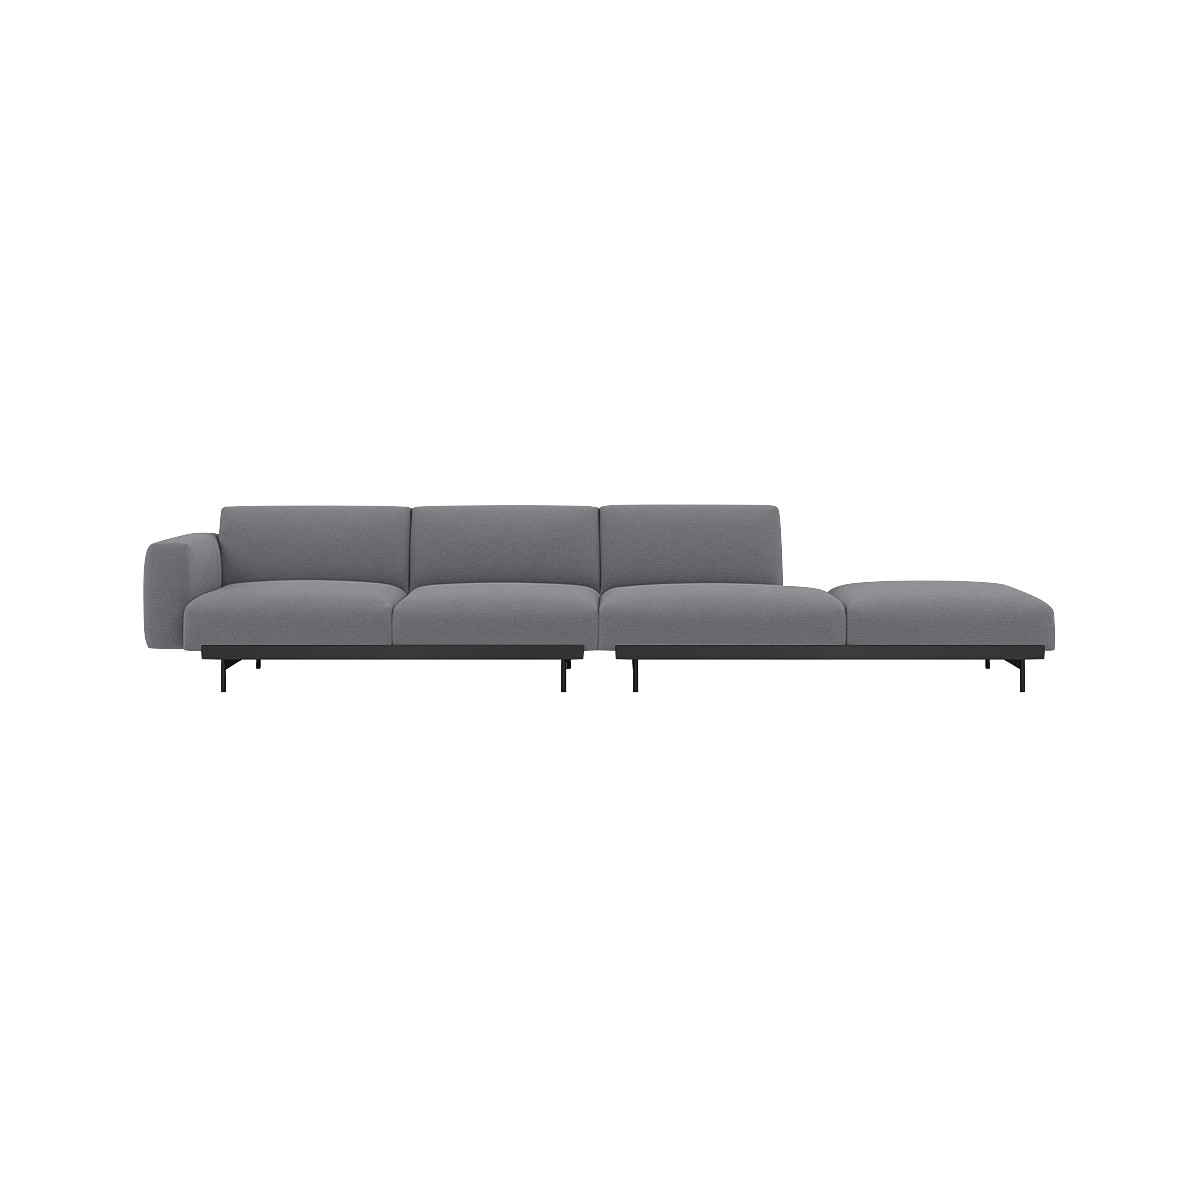 Ocean 80 / black – In Situ 4-seater sofa / configuration 3 – 360 x 107 cm